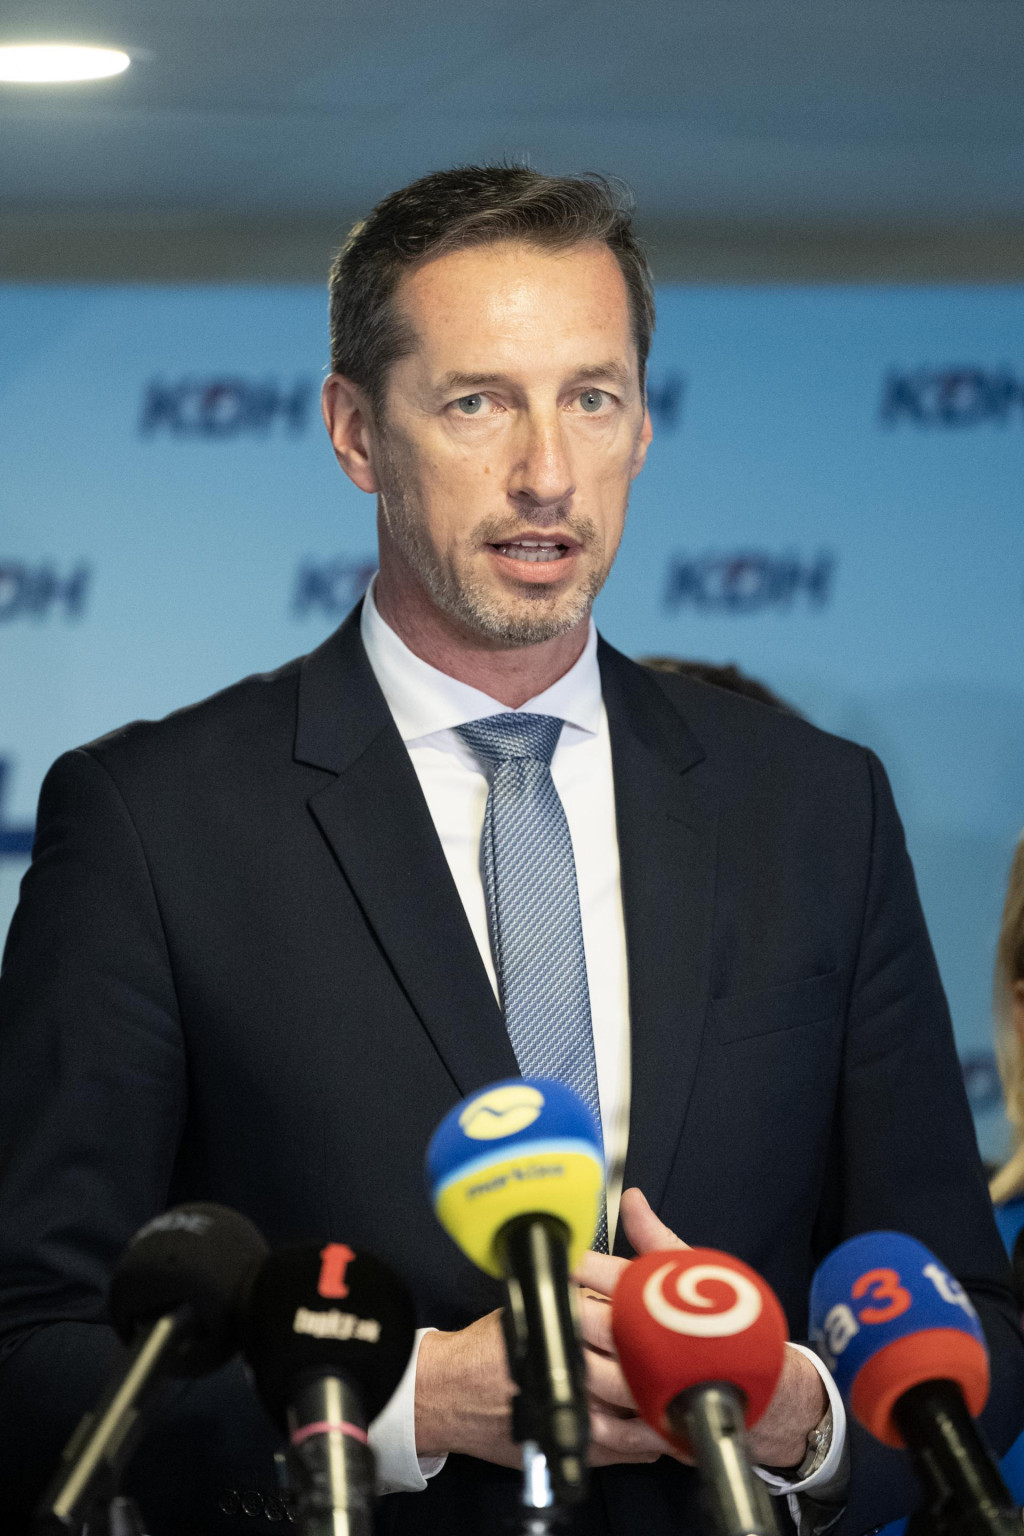 Predseda opozičného KDH Milan Majerský. FOTO: TASR/Pavel Neubauer